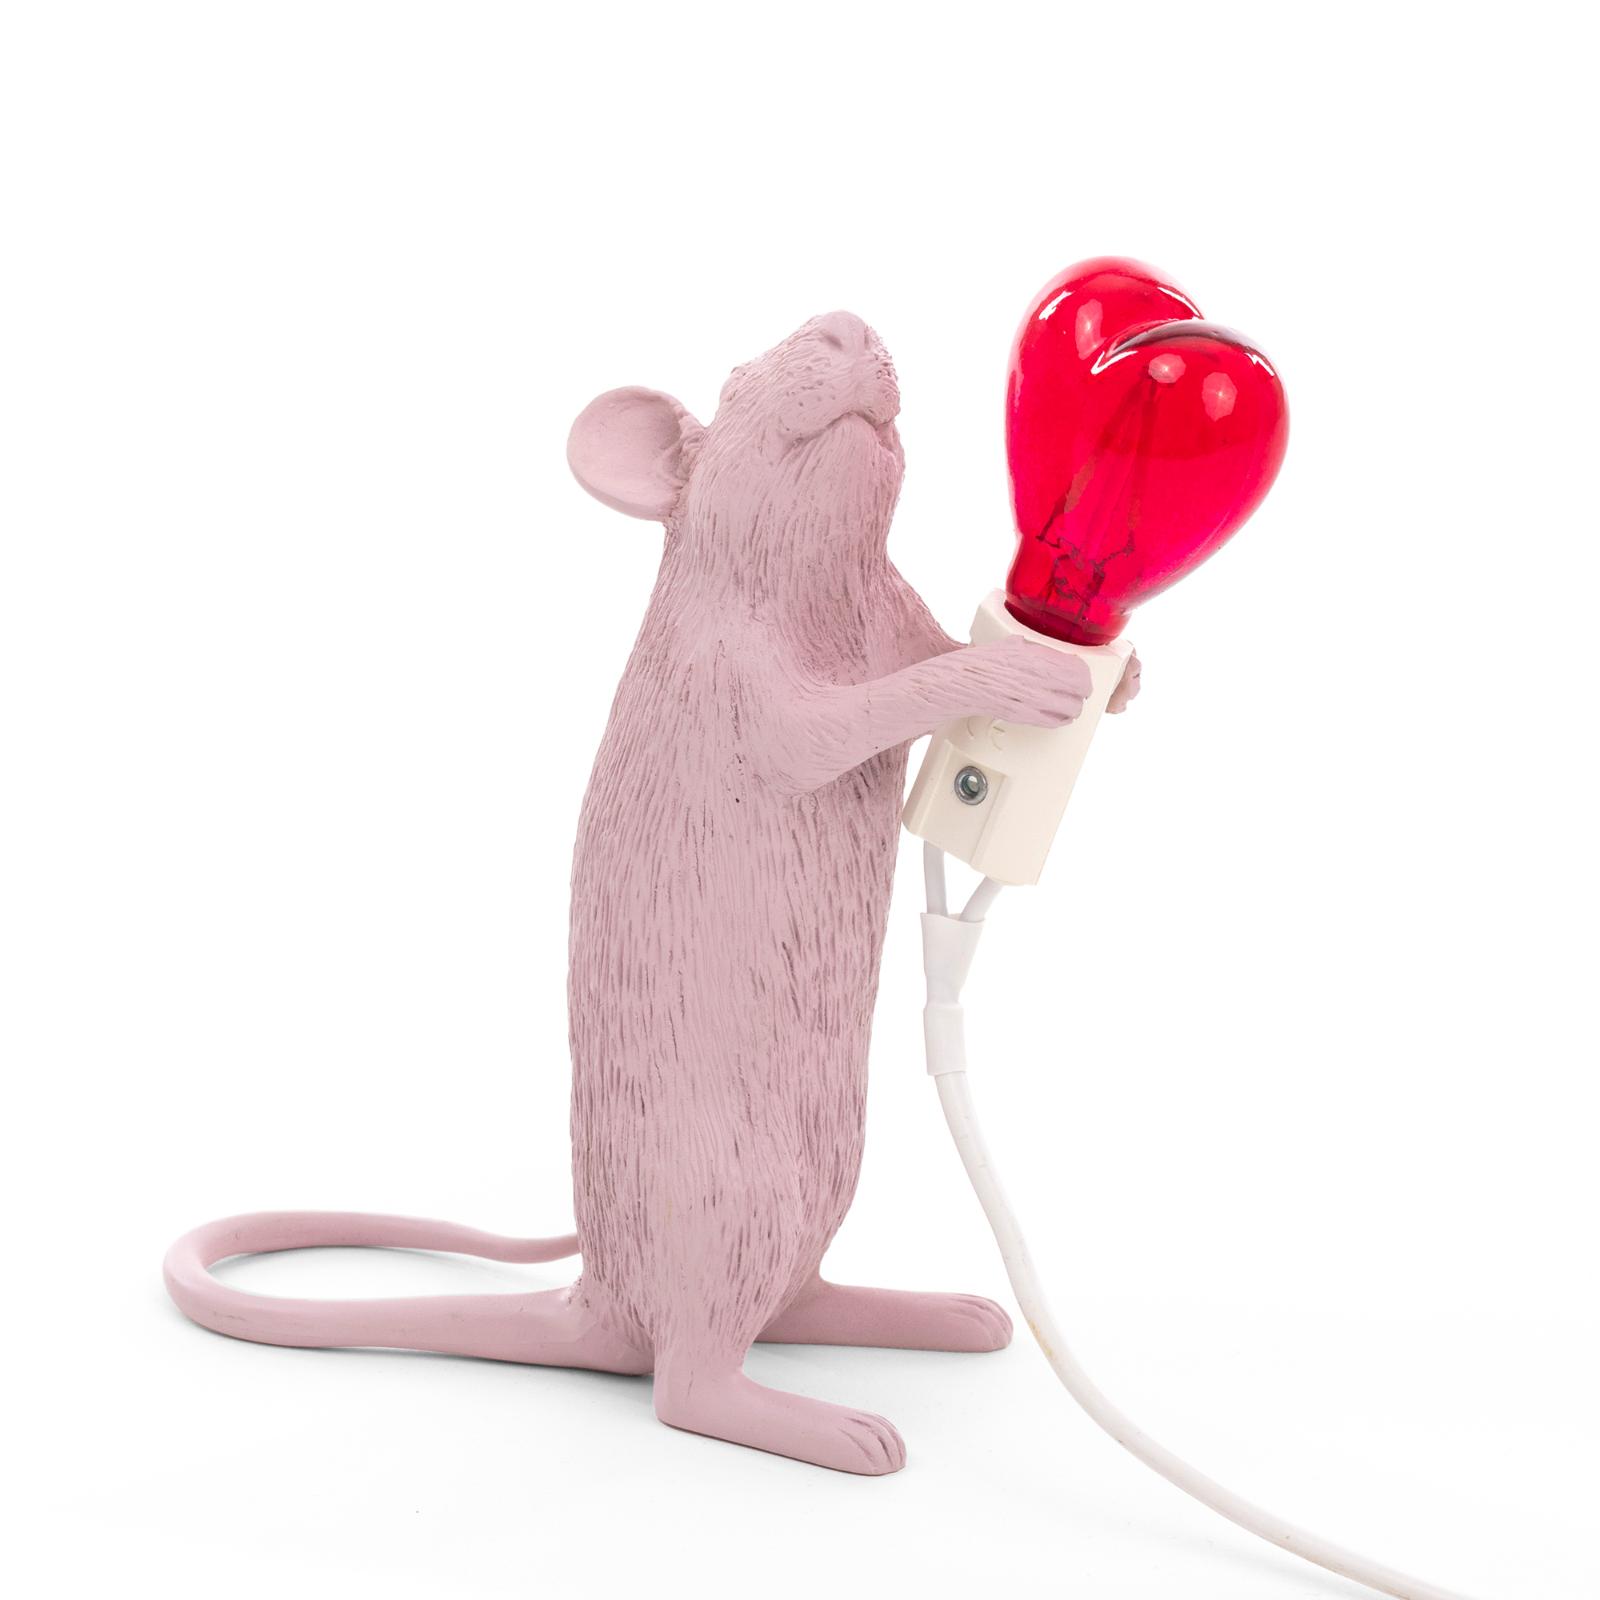 Настольная лампа Mouse Lamp Love Edition, Seletti